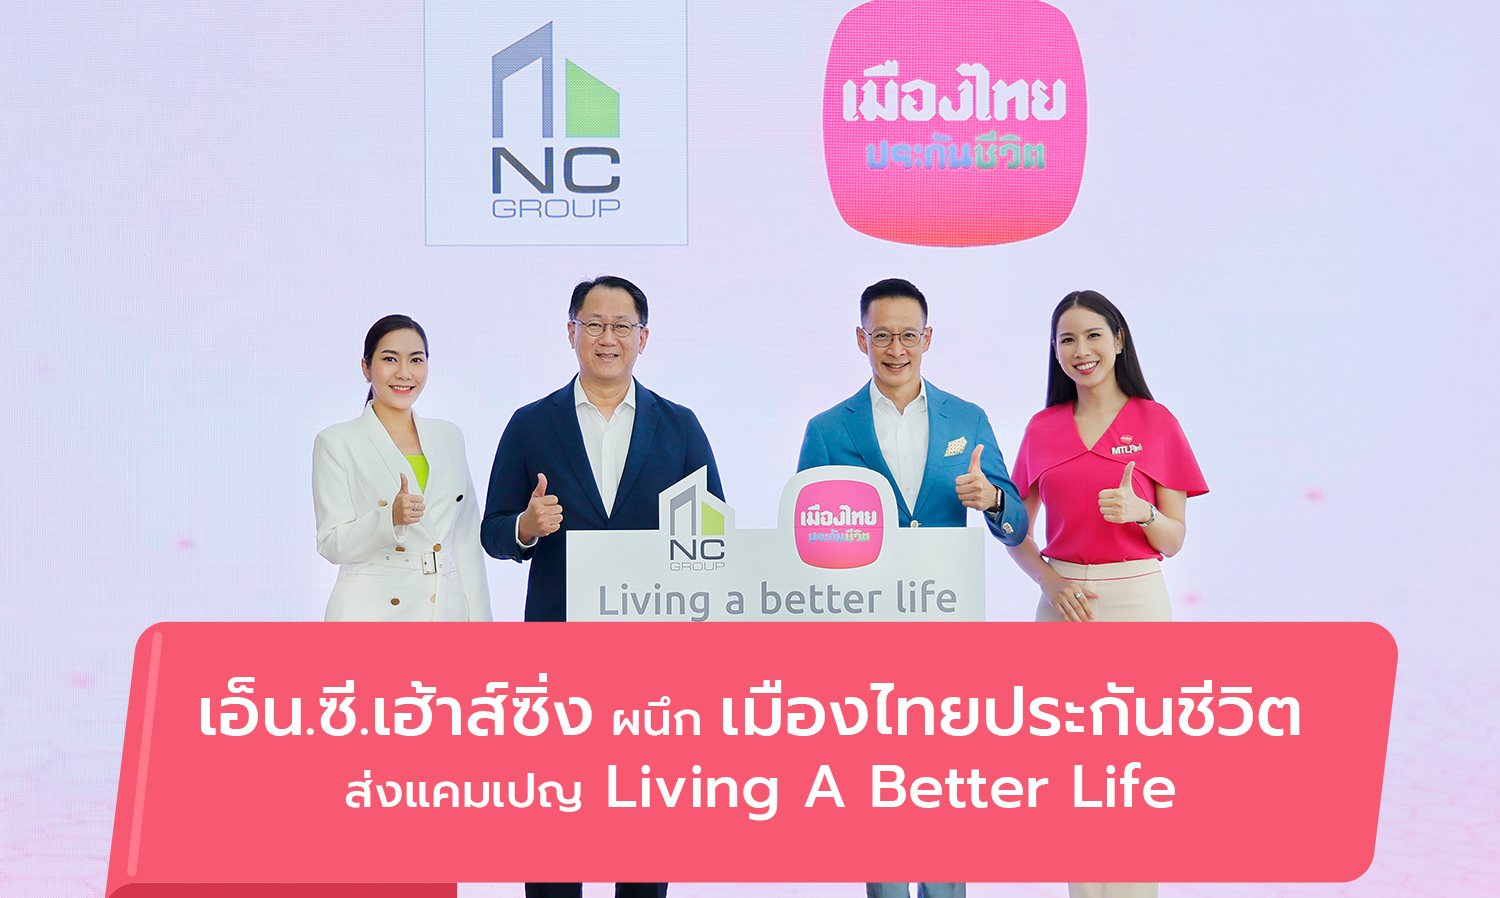 เอ็น.ซี.เฮ้าส์ซิ่ง ผนึก เมืองไทยประกันชีวิต  ส่งแคมเปญ Living A Better Life